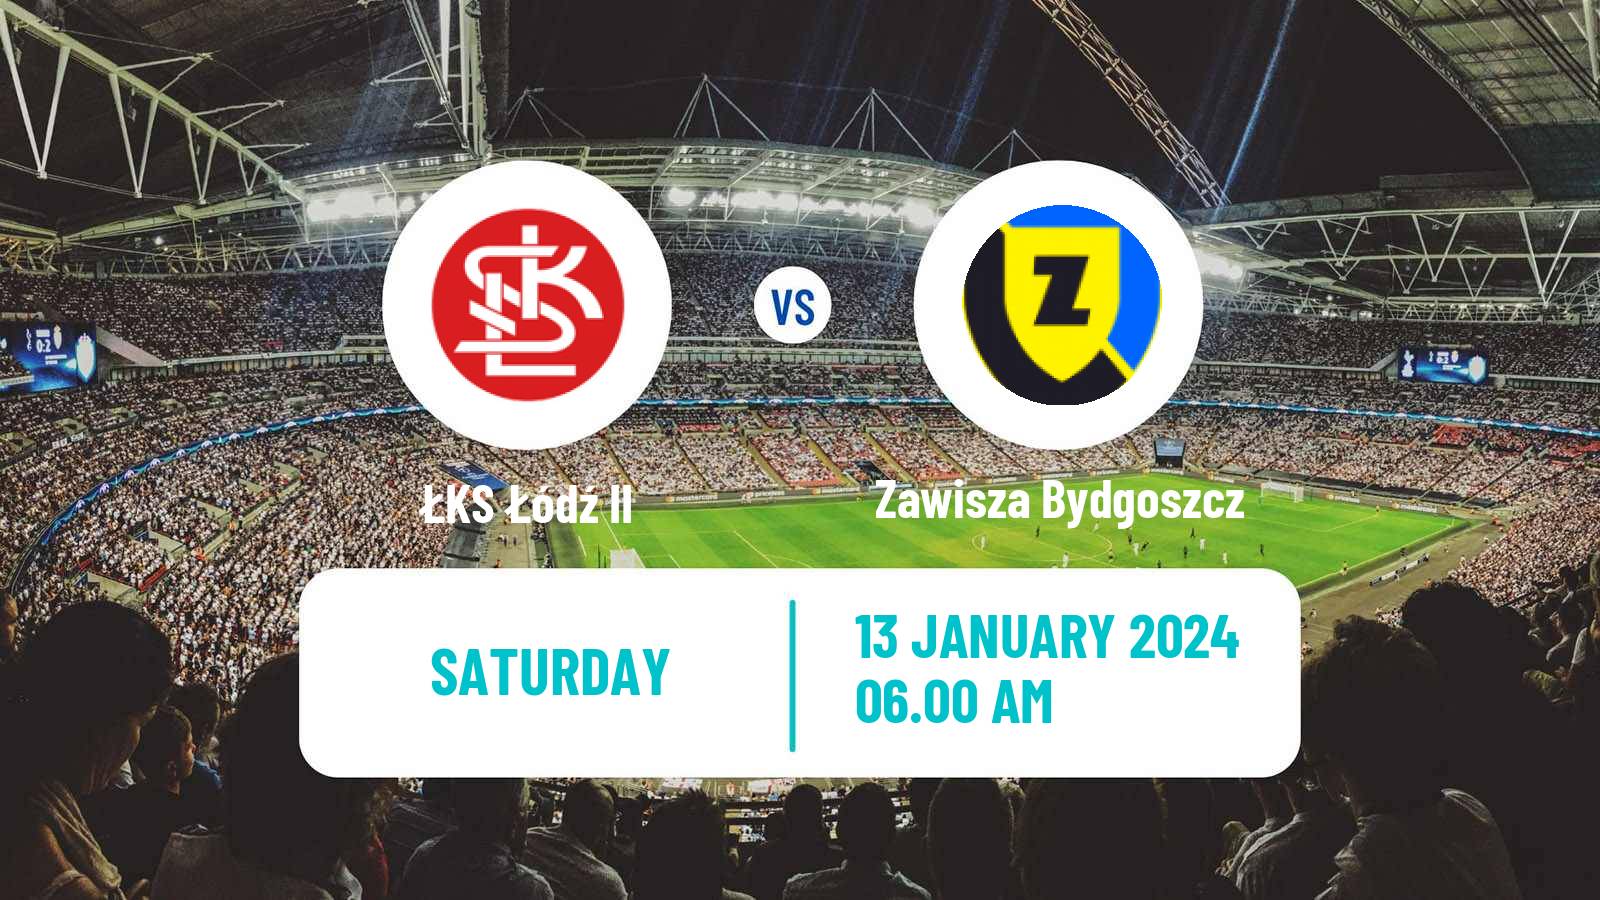 Soccer Club Friendly ŁKS Łódź II - Zawisza Bydgoszcz